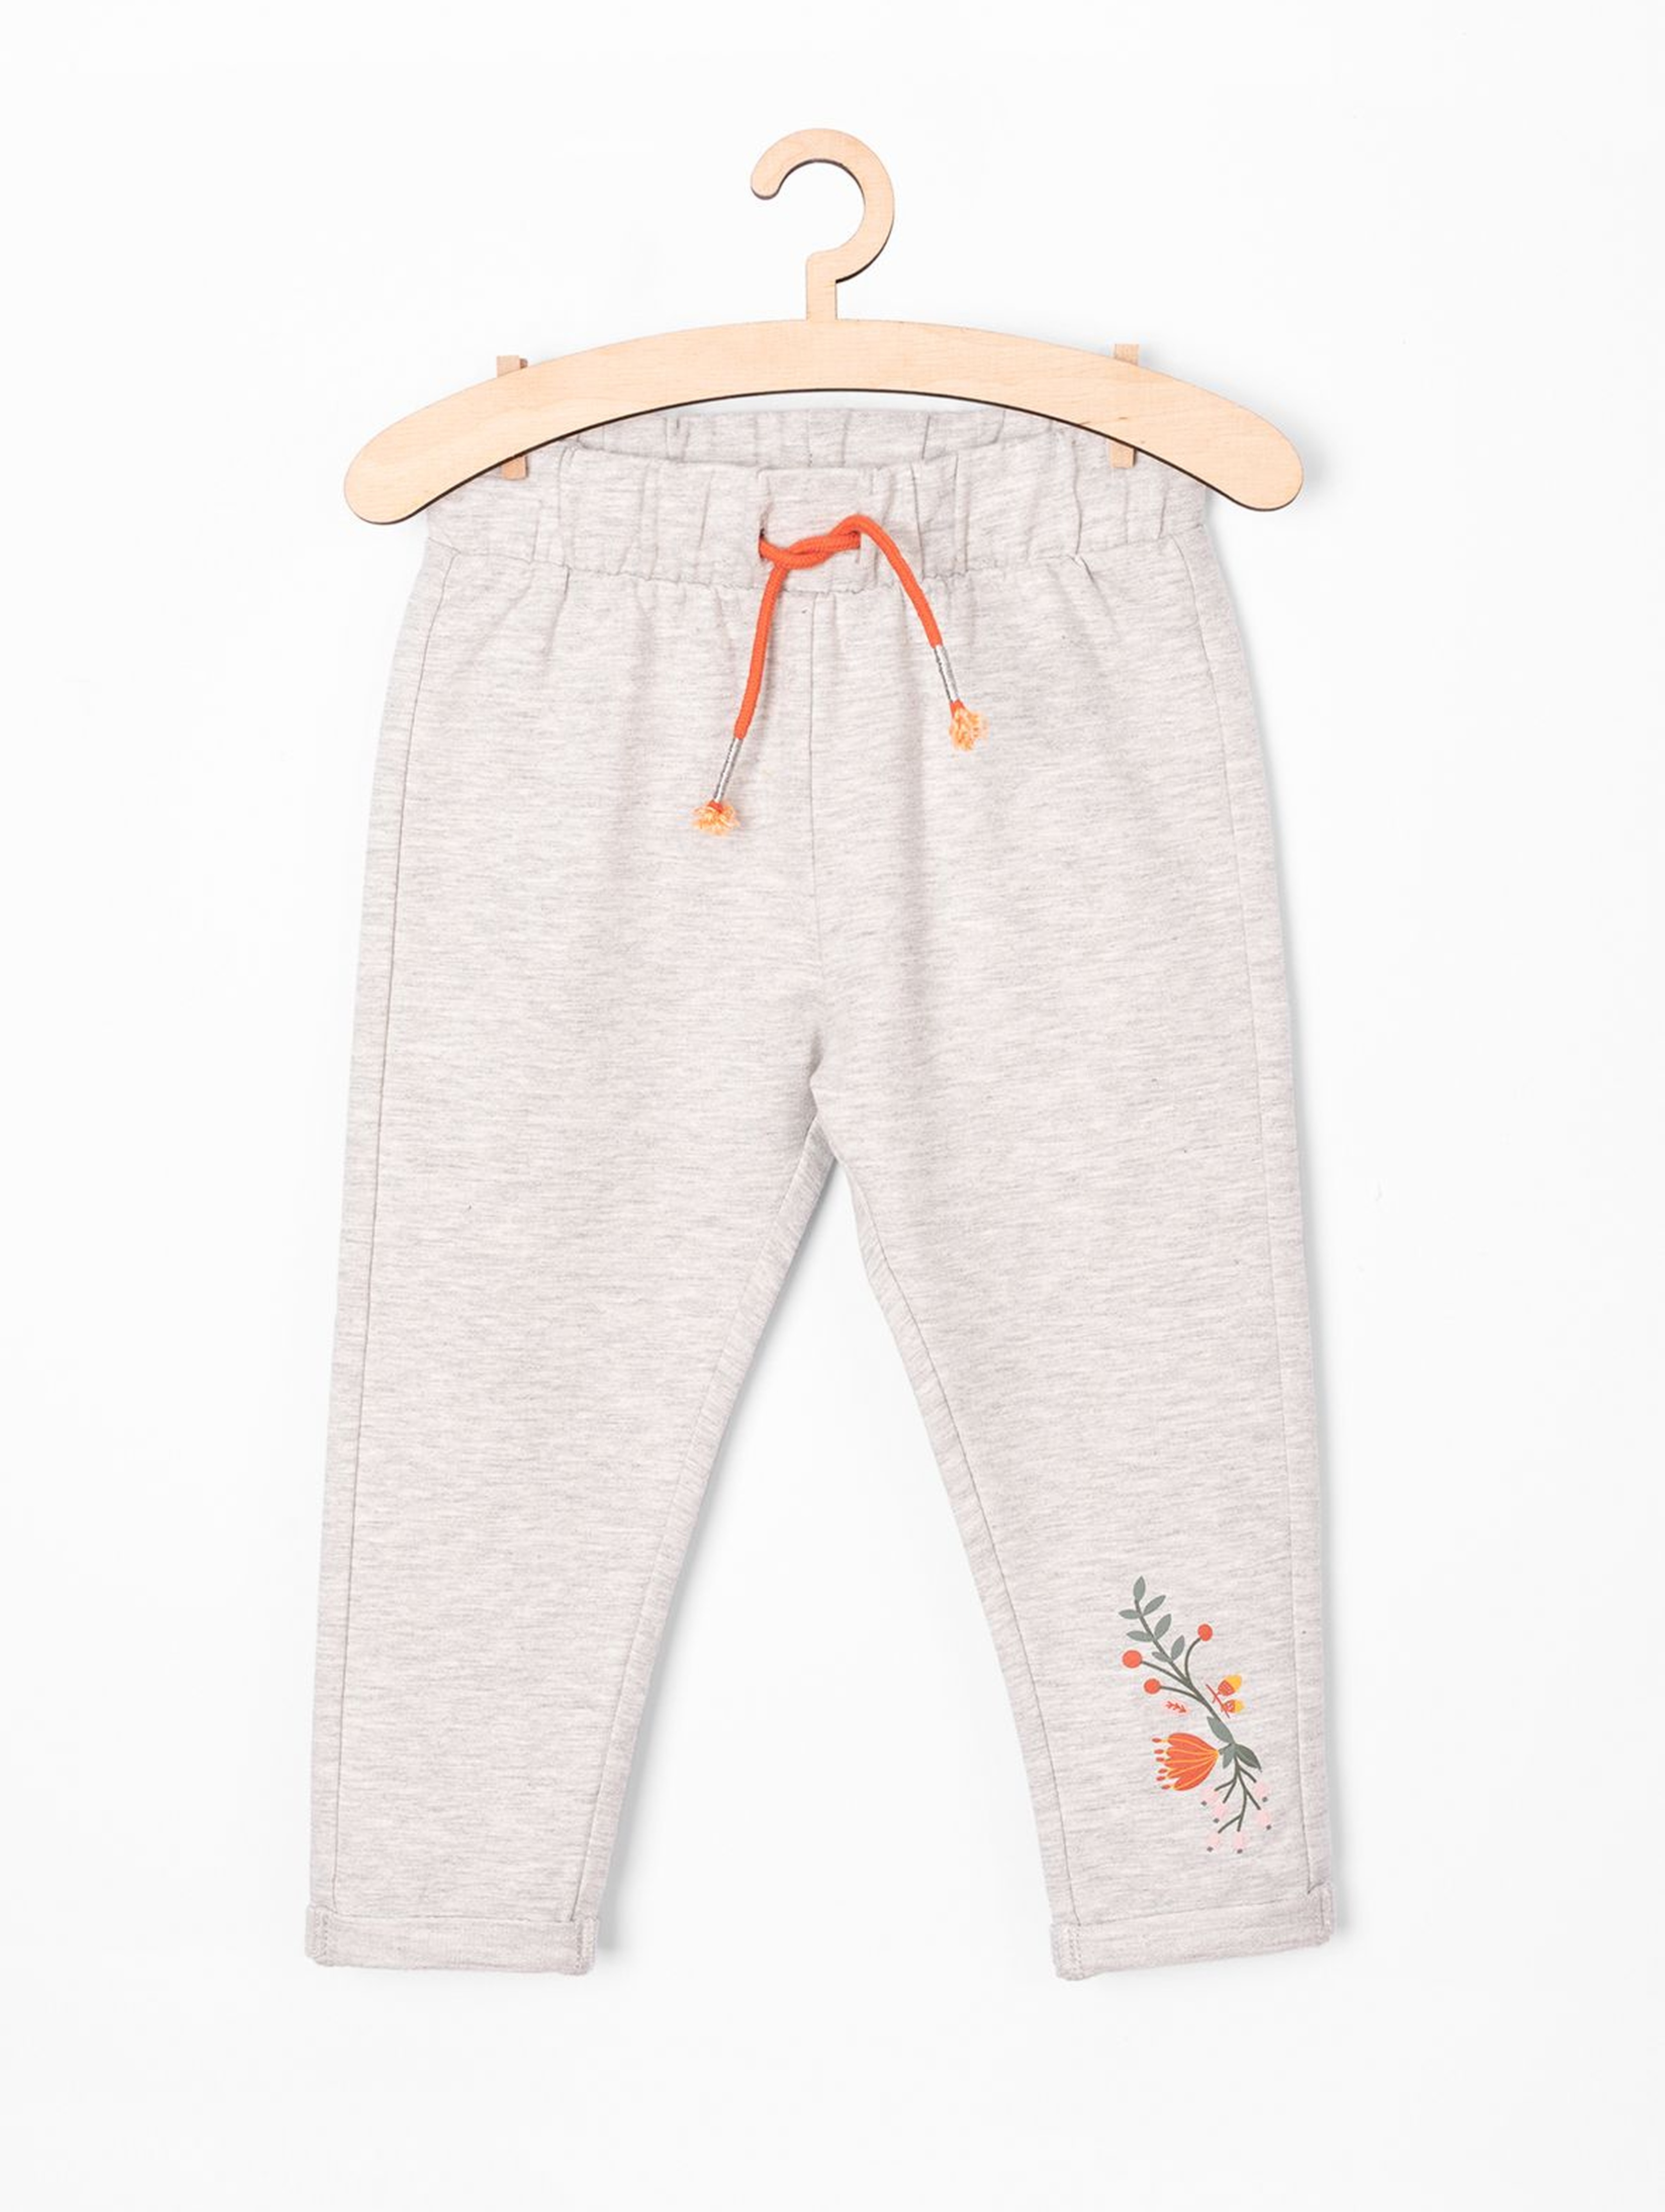 Spodnie dresowe niemowlęce - szare z kwiatkiem